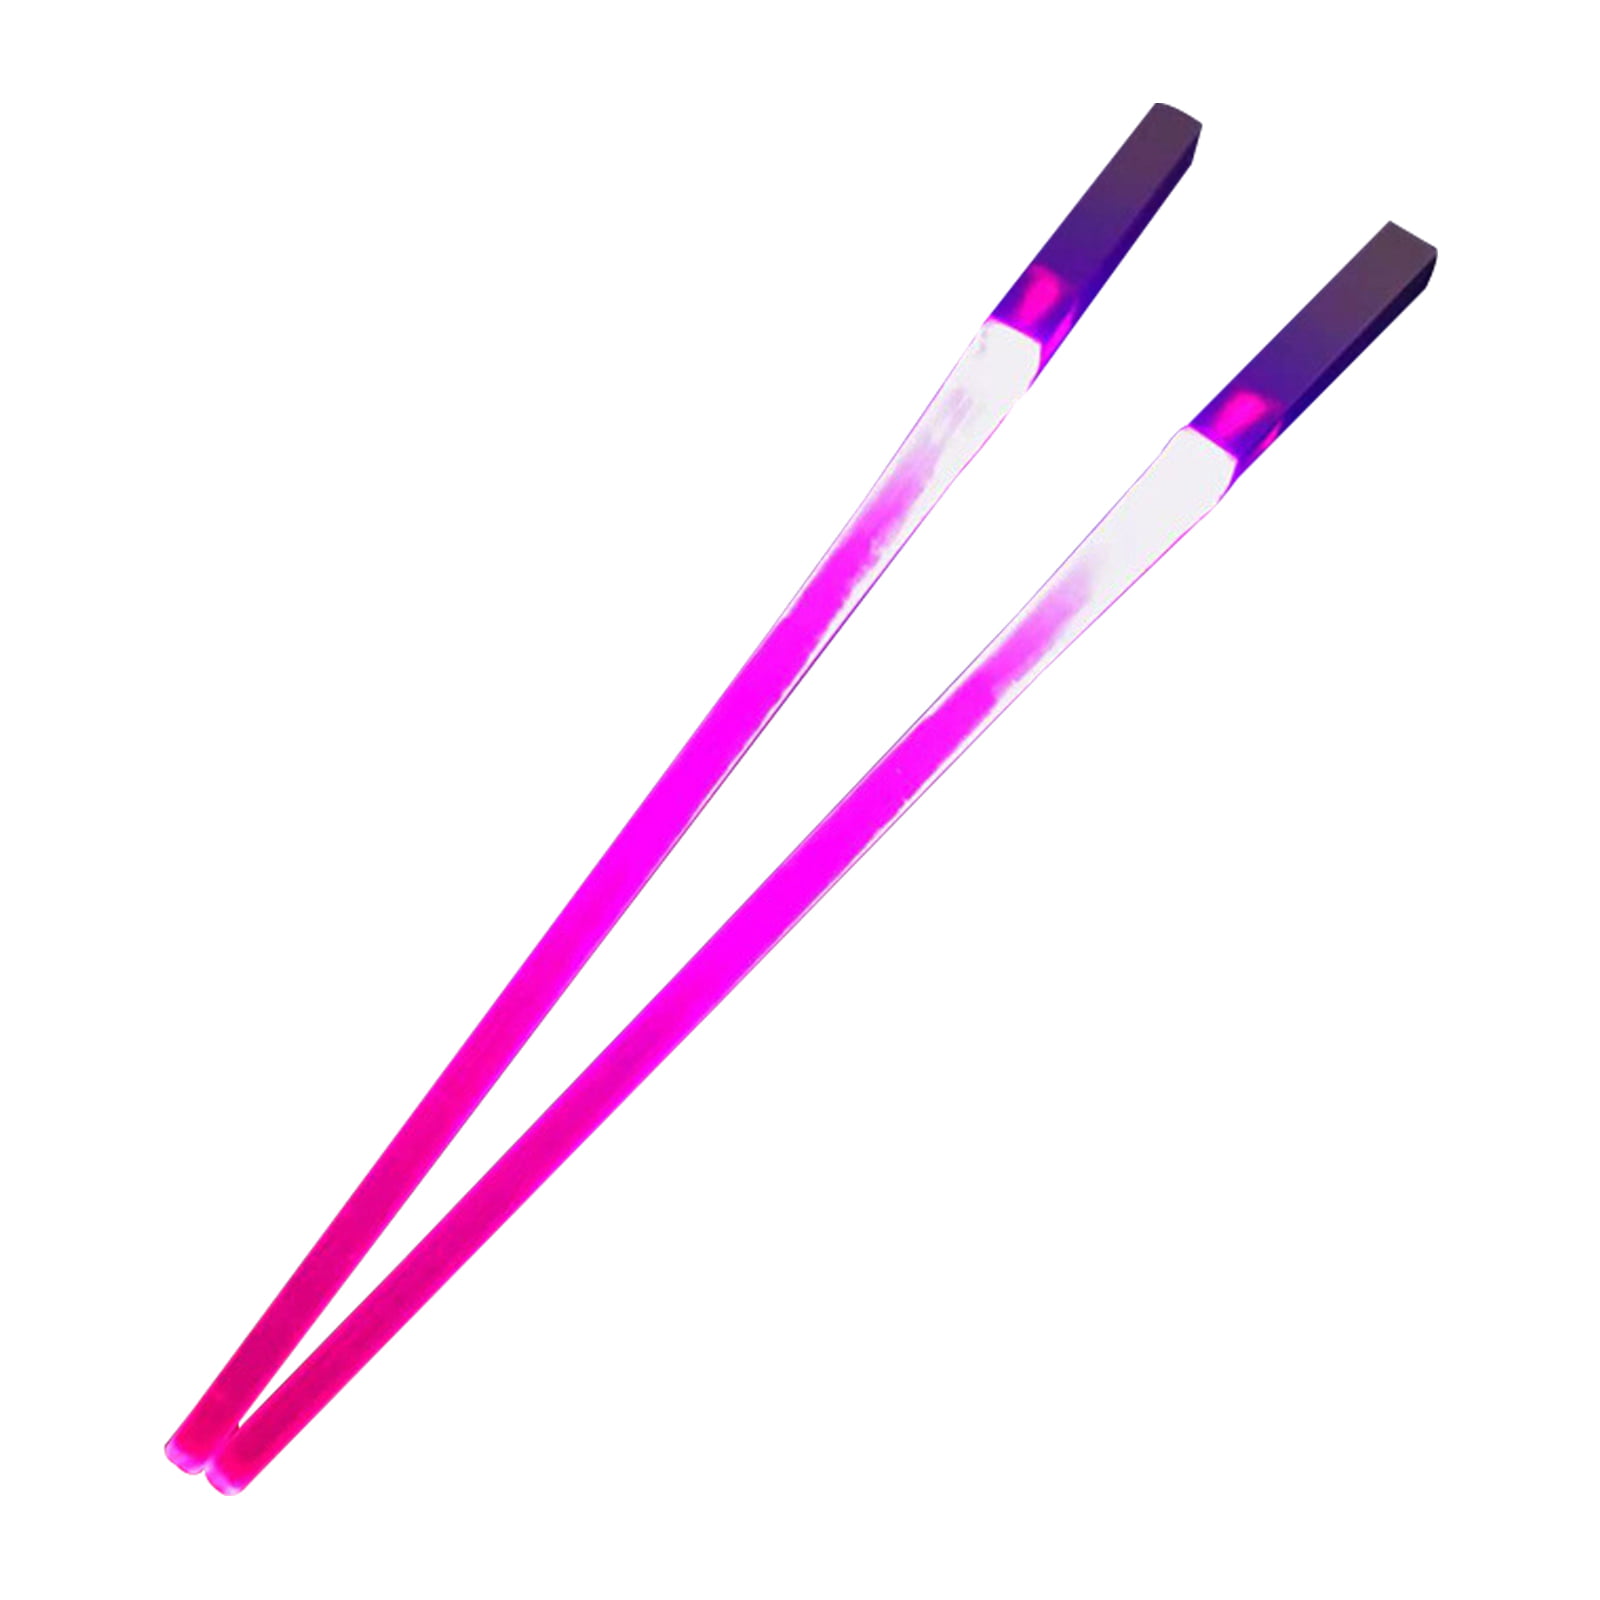 Chop Sabers Lightsaber Chopsticks, Lights Up, Shoous Chopsticks